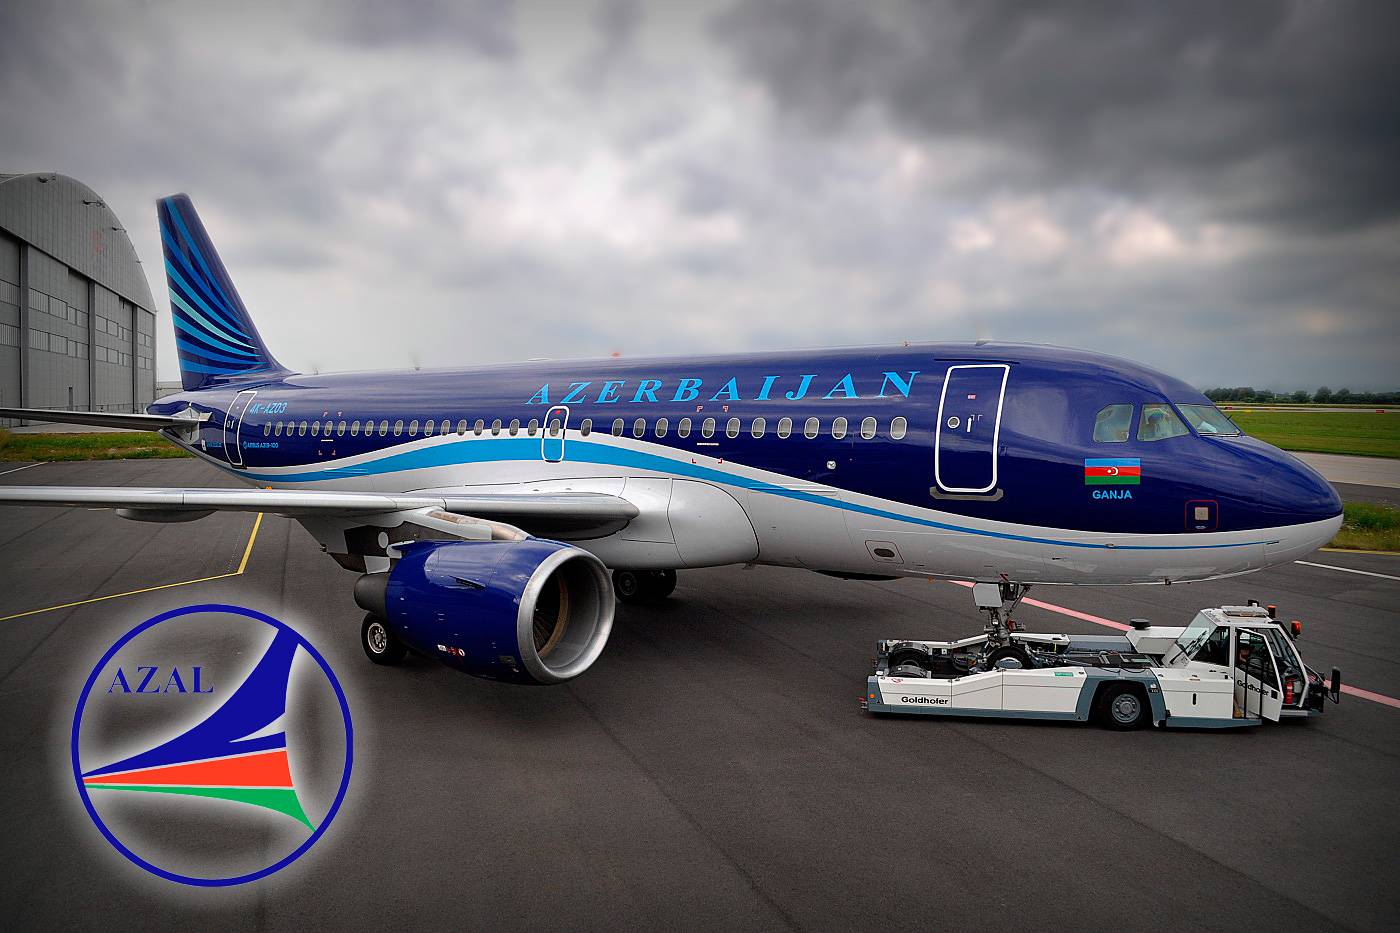 Азербайджанские авиалинии - отзывы пассажиров 2017-2018 про авиакомпанию azerbaijan airlines